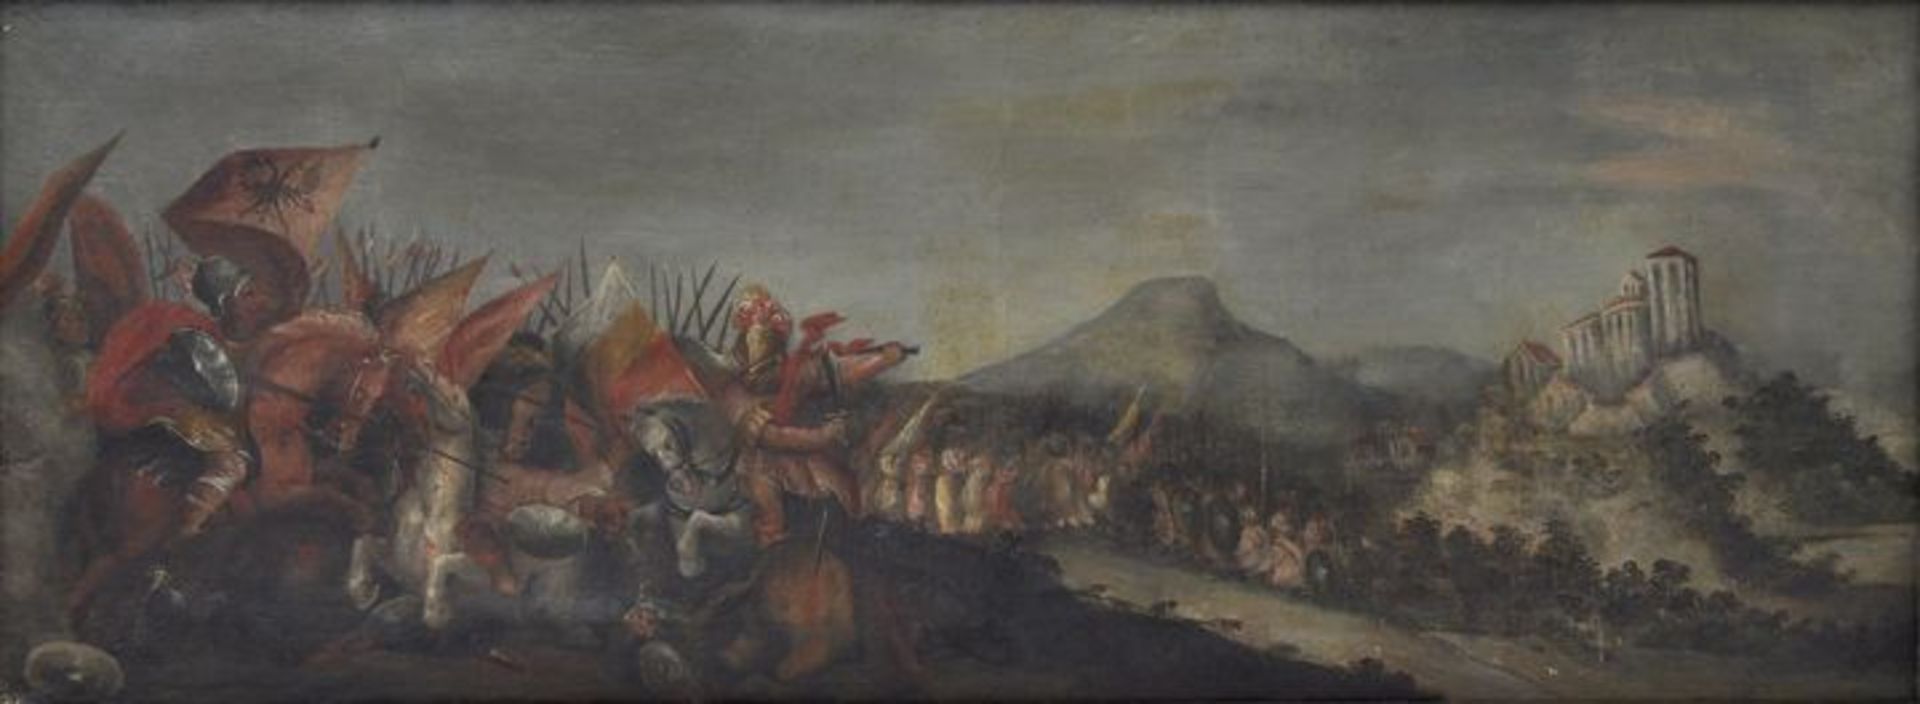 Schlachtenmaler, 2. H. 17. Jh.Schlachtpanorama Schlacht der Türkenkriege. Öl auf Leinwand, doubl.,